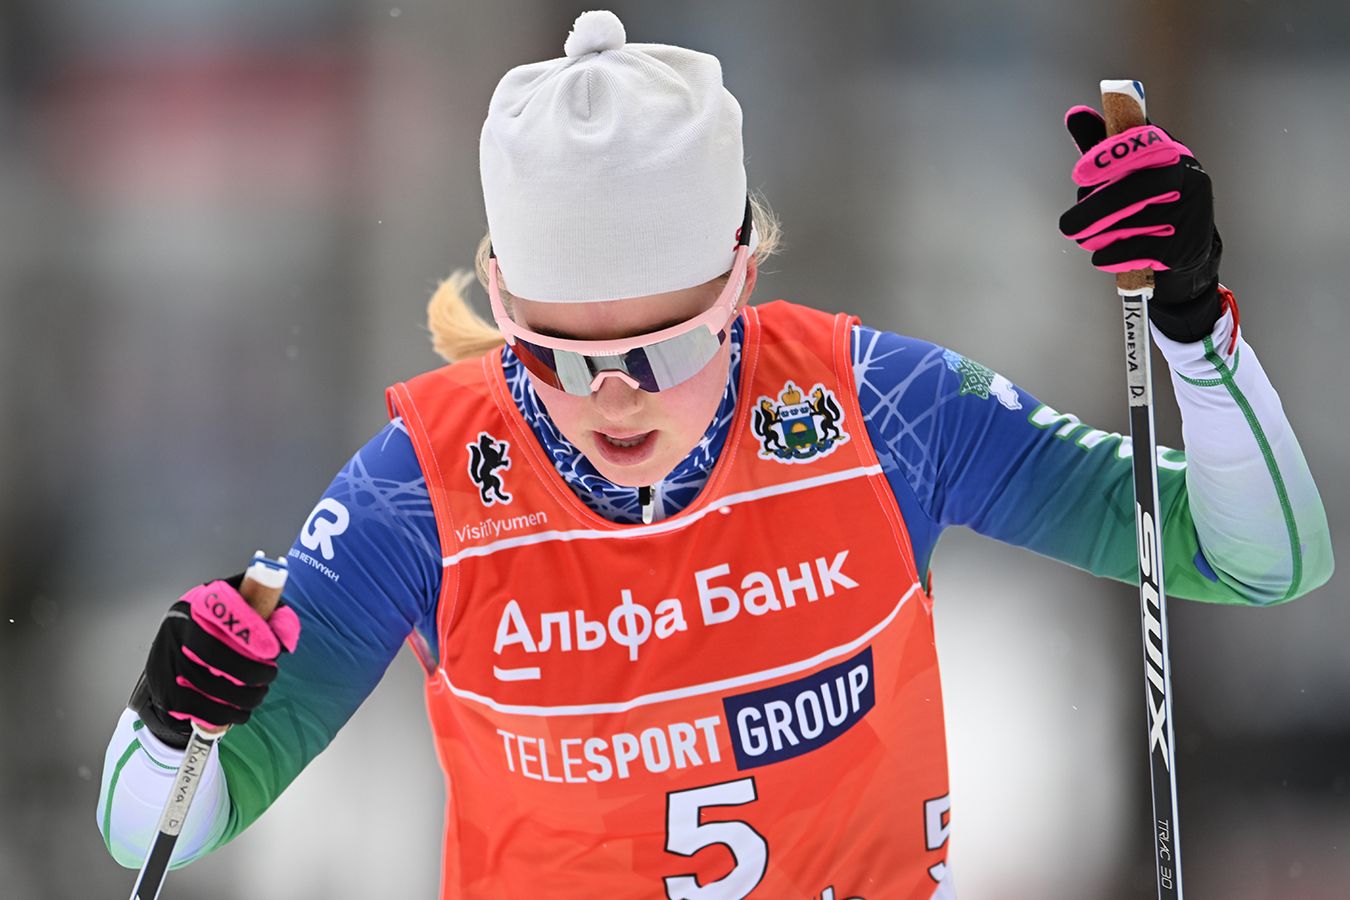 21-летняя лыжница Канева выиграла масс-старт на 50 км в рамках чемпионата России